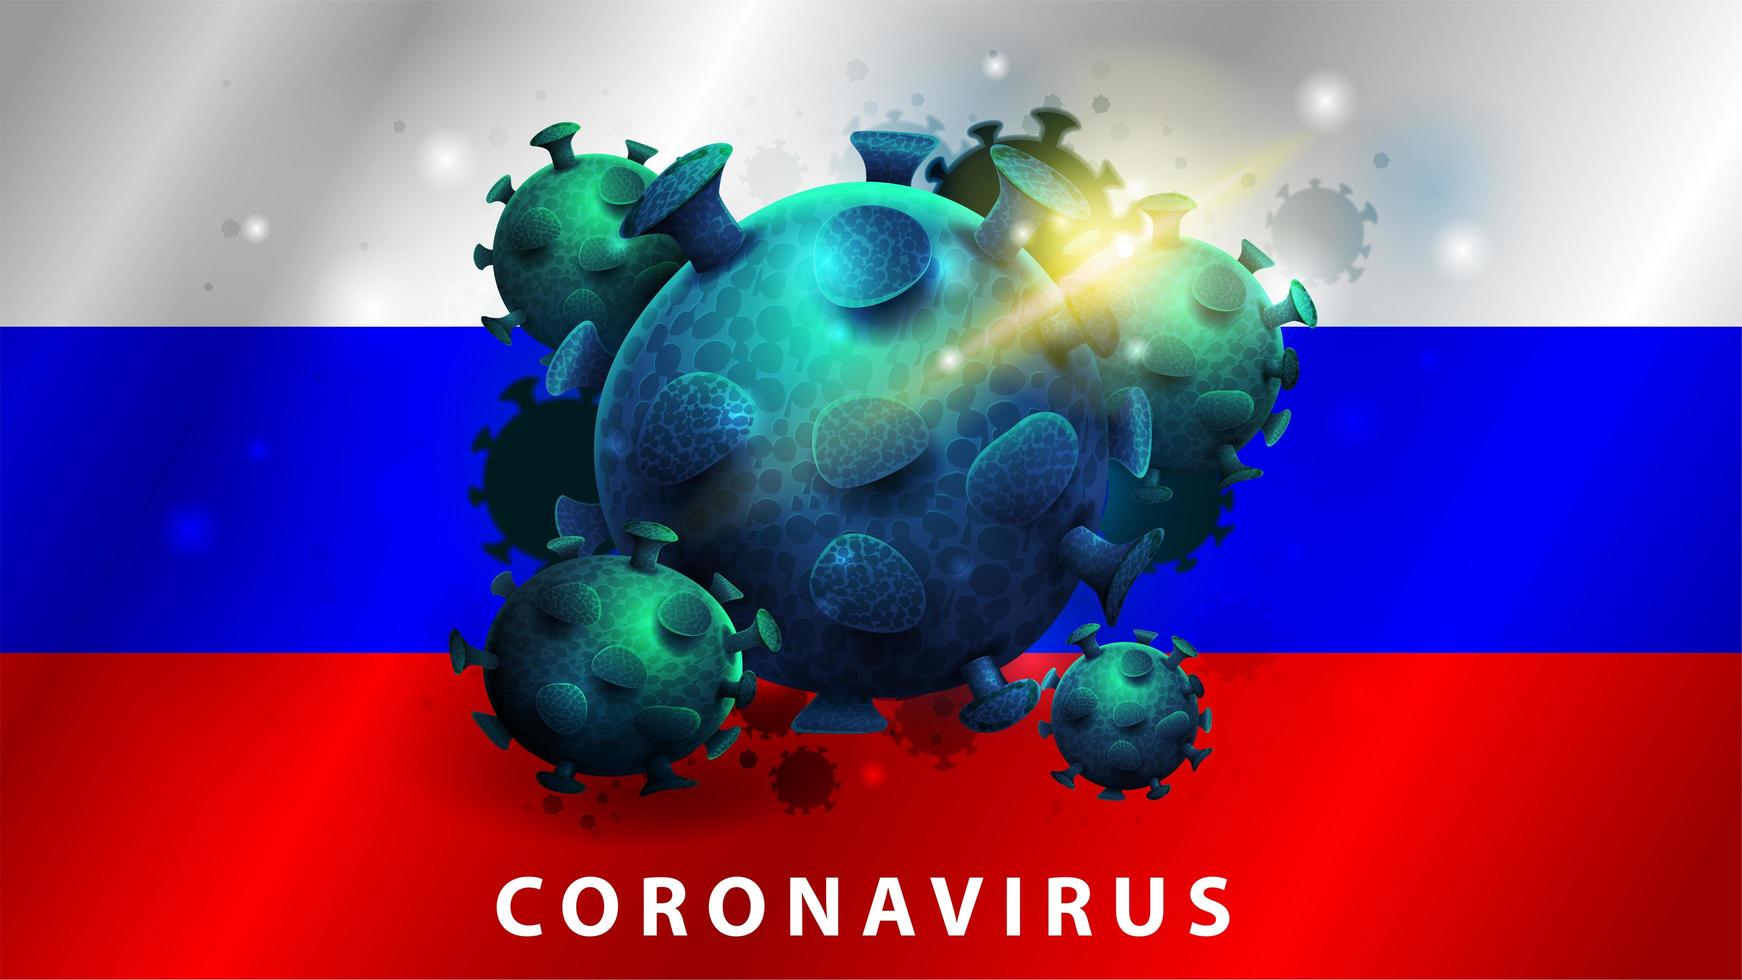 teken van coronavirus covid-2019 op de vlag van Rusland vector